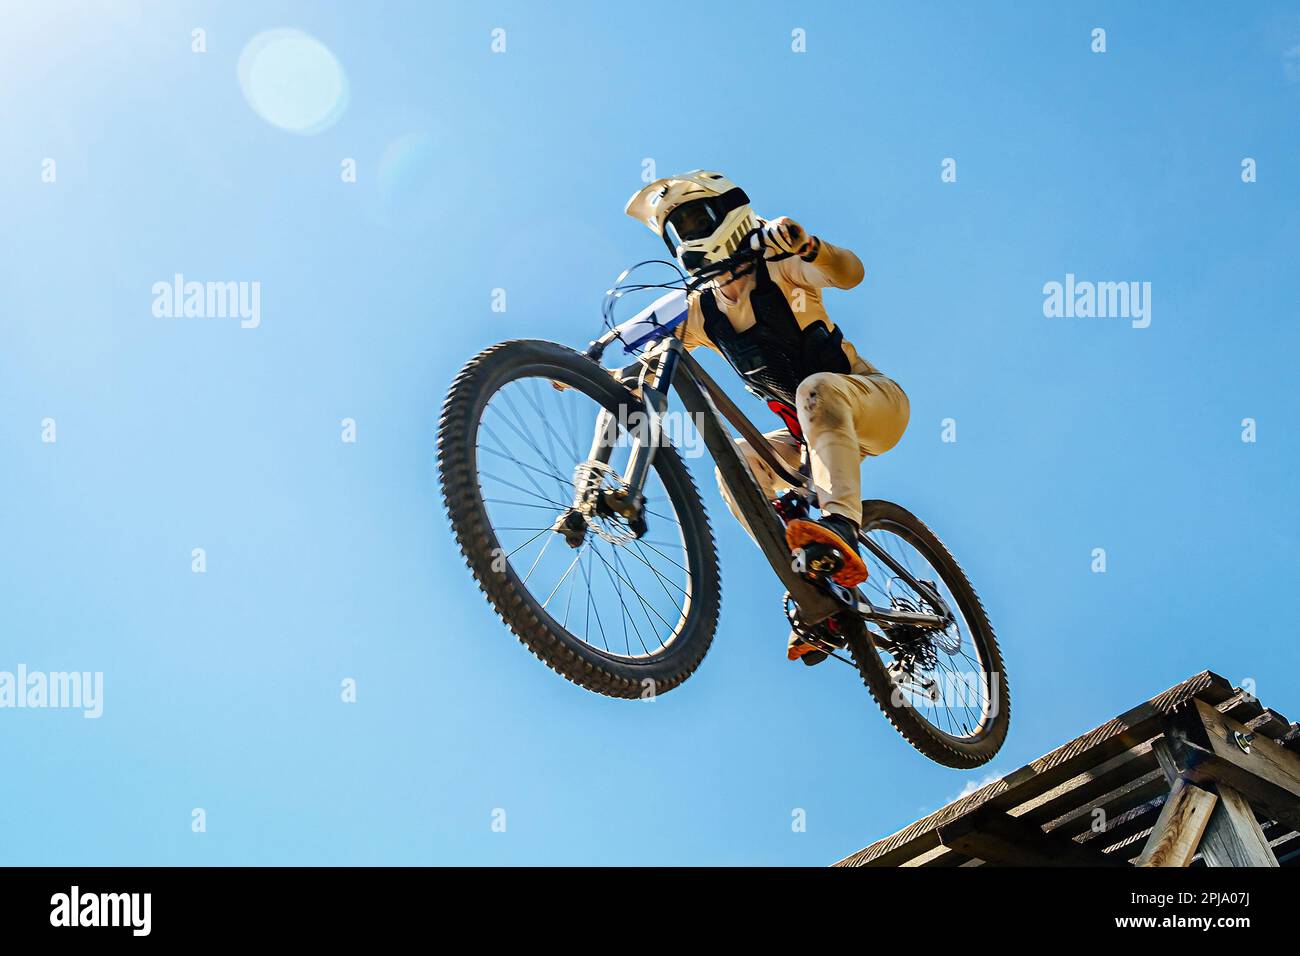 Cycliste femelle sur descente saut en bois, fond bleu ciel, course de vélo de montagne DH, jeux de sport extrême Banque D'Images